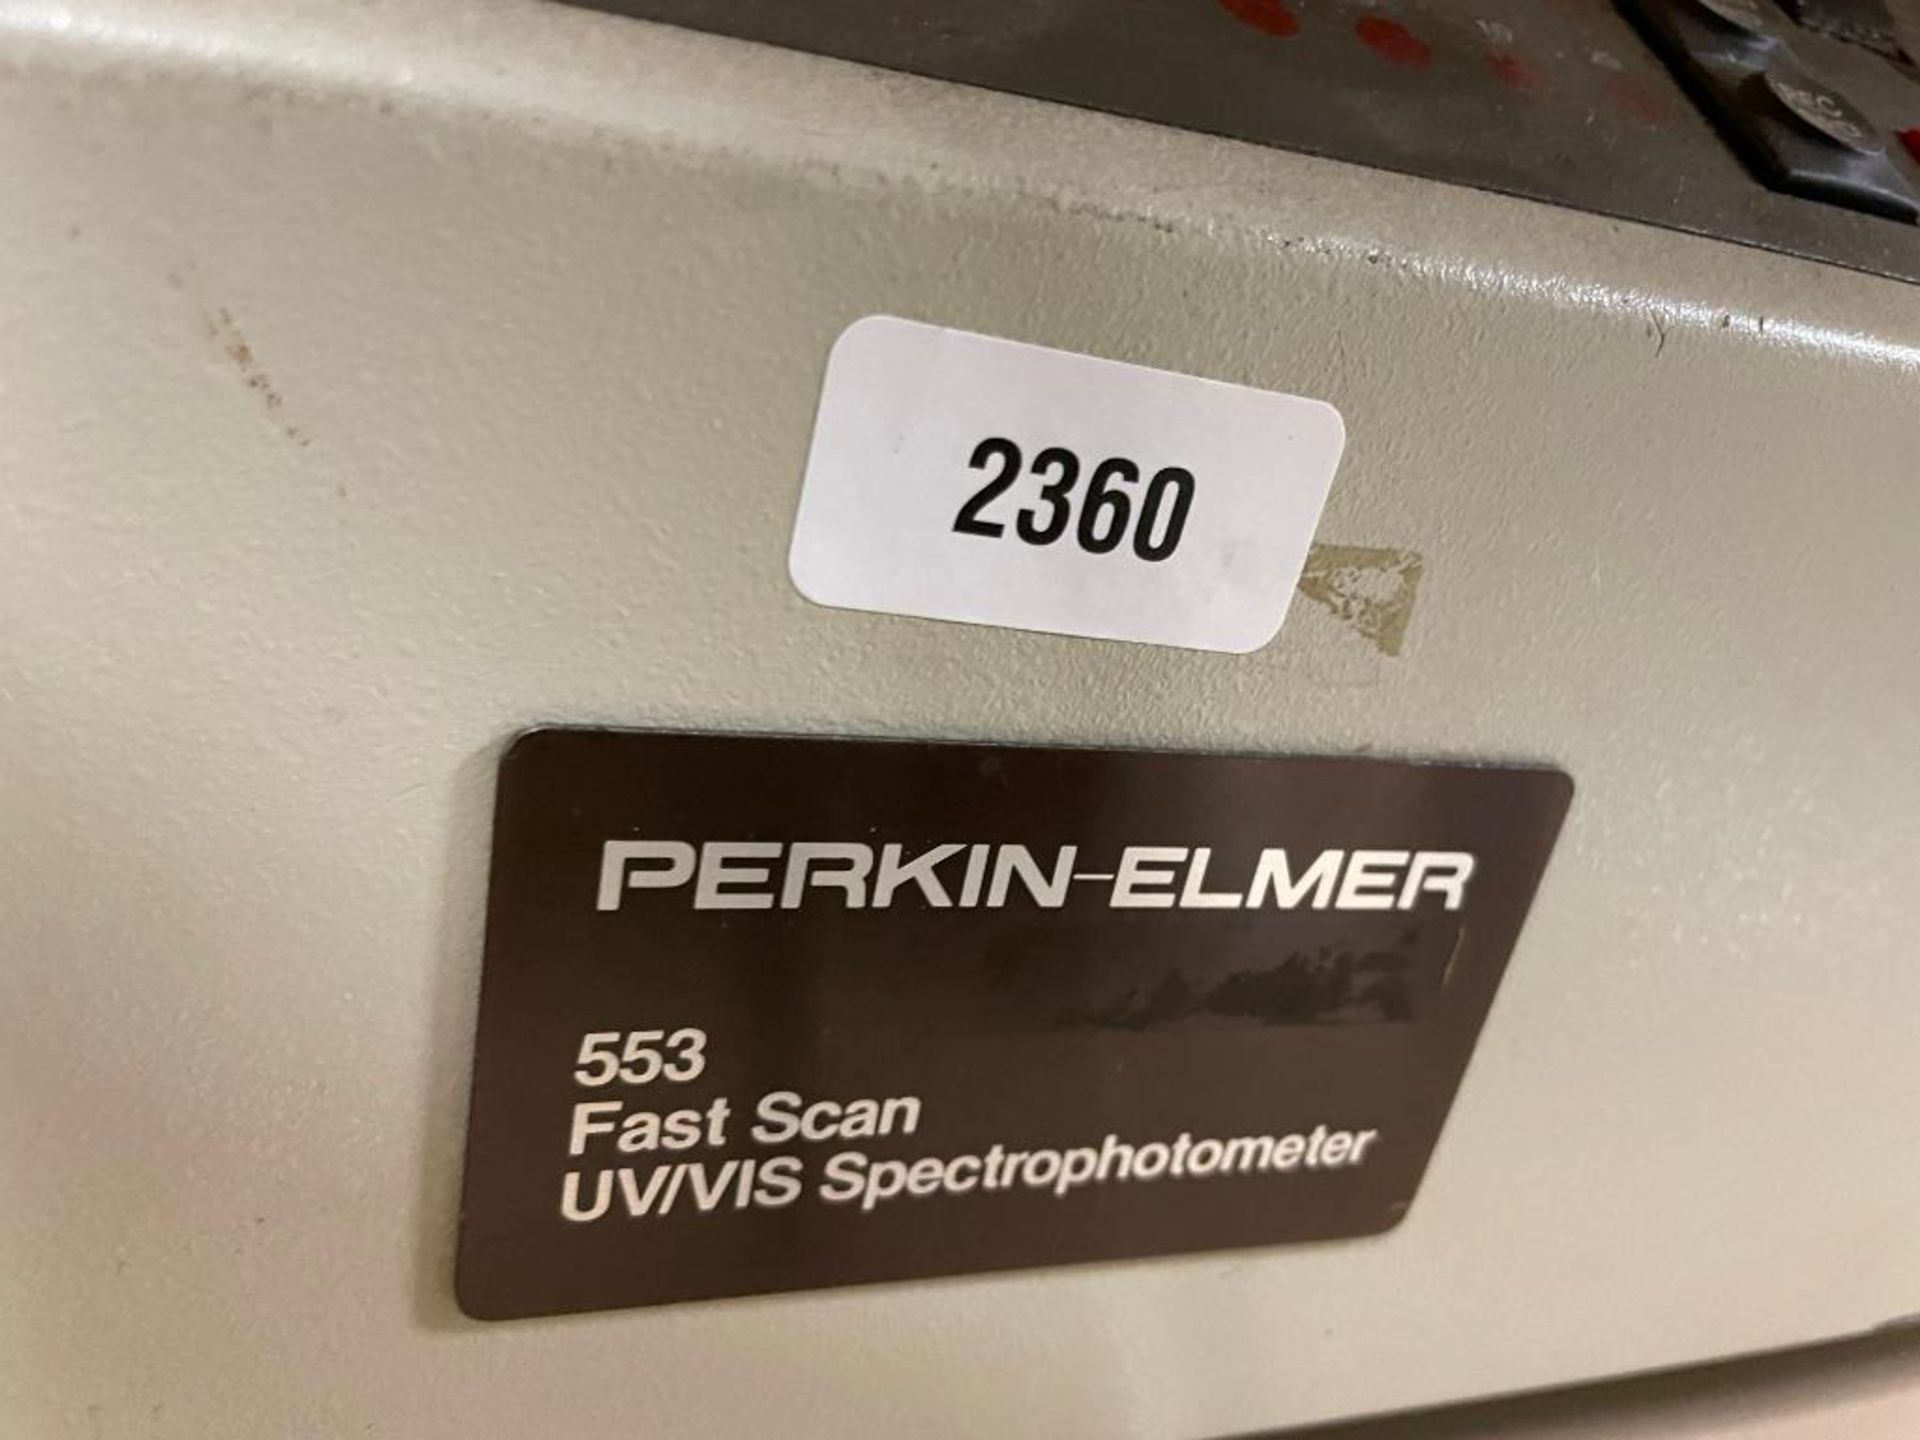 FAST SCAN UV/VIS SPECTROPHOTOMETER BRAND/MODEL: PERKIN ELMER 553 INFORMATION: 115V, 230V, 560VA QTY: - Image 4 of 7